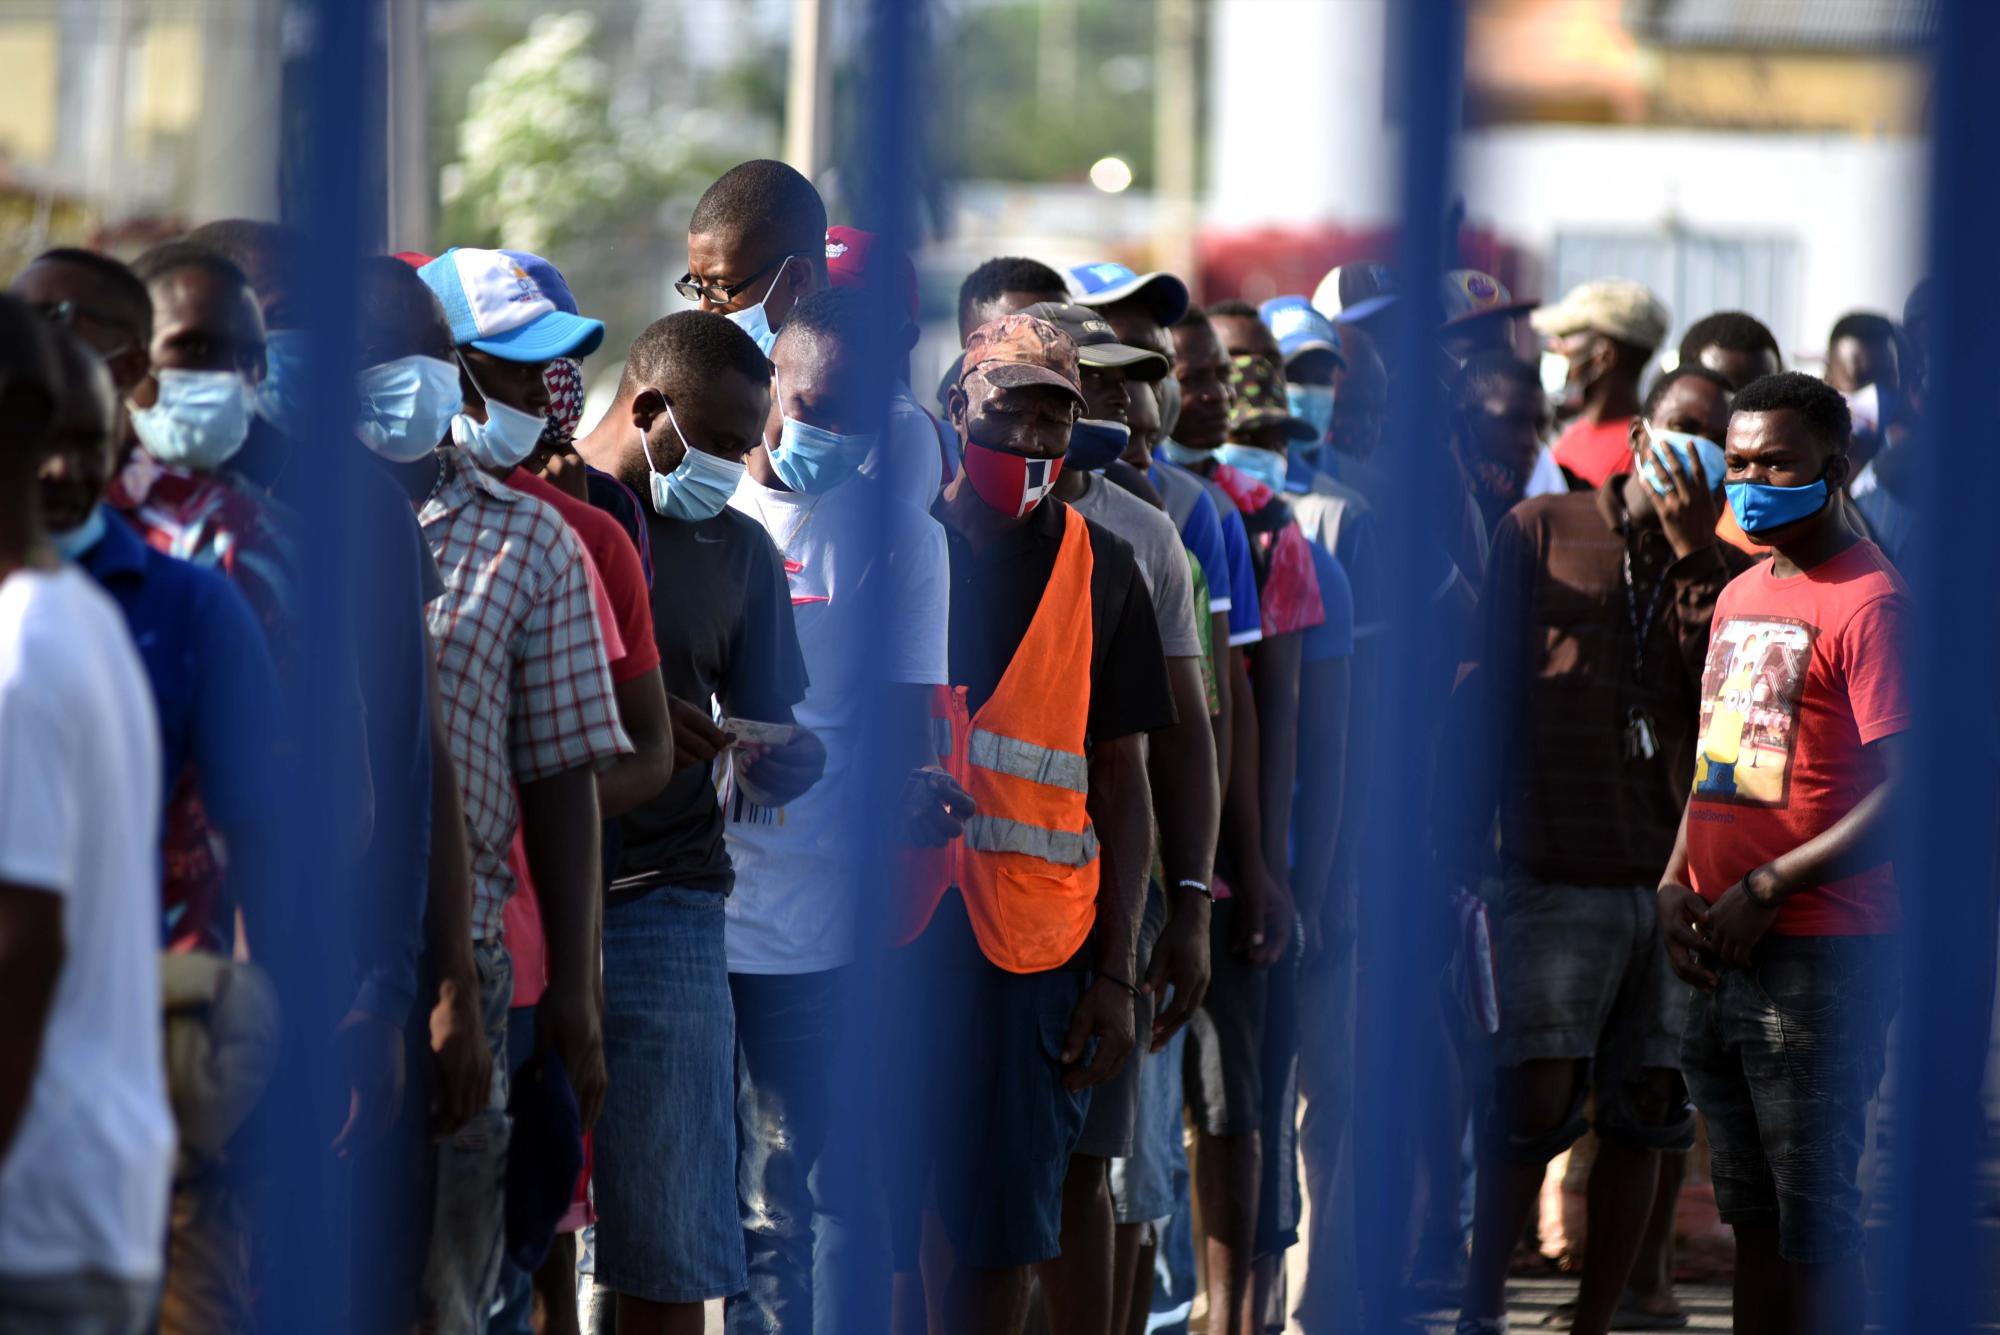 Un grupo de hombres aguardó desde muy temprano para ingresar a territorio dominicano. (Foto: Aneudy Tavárez / Diario Libre)